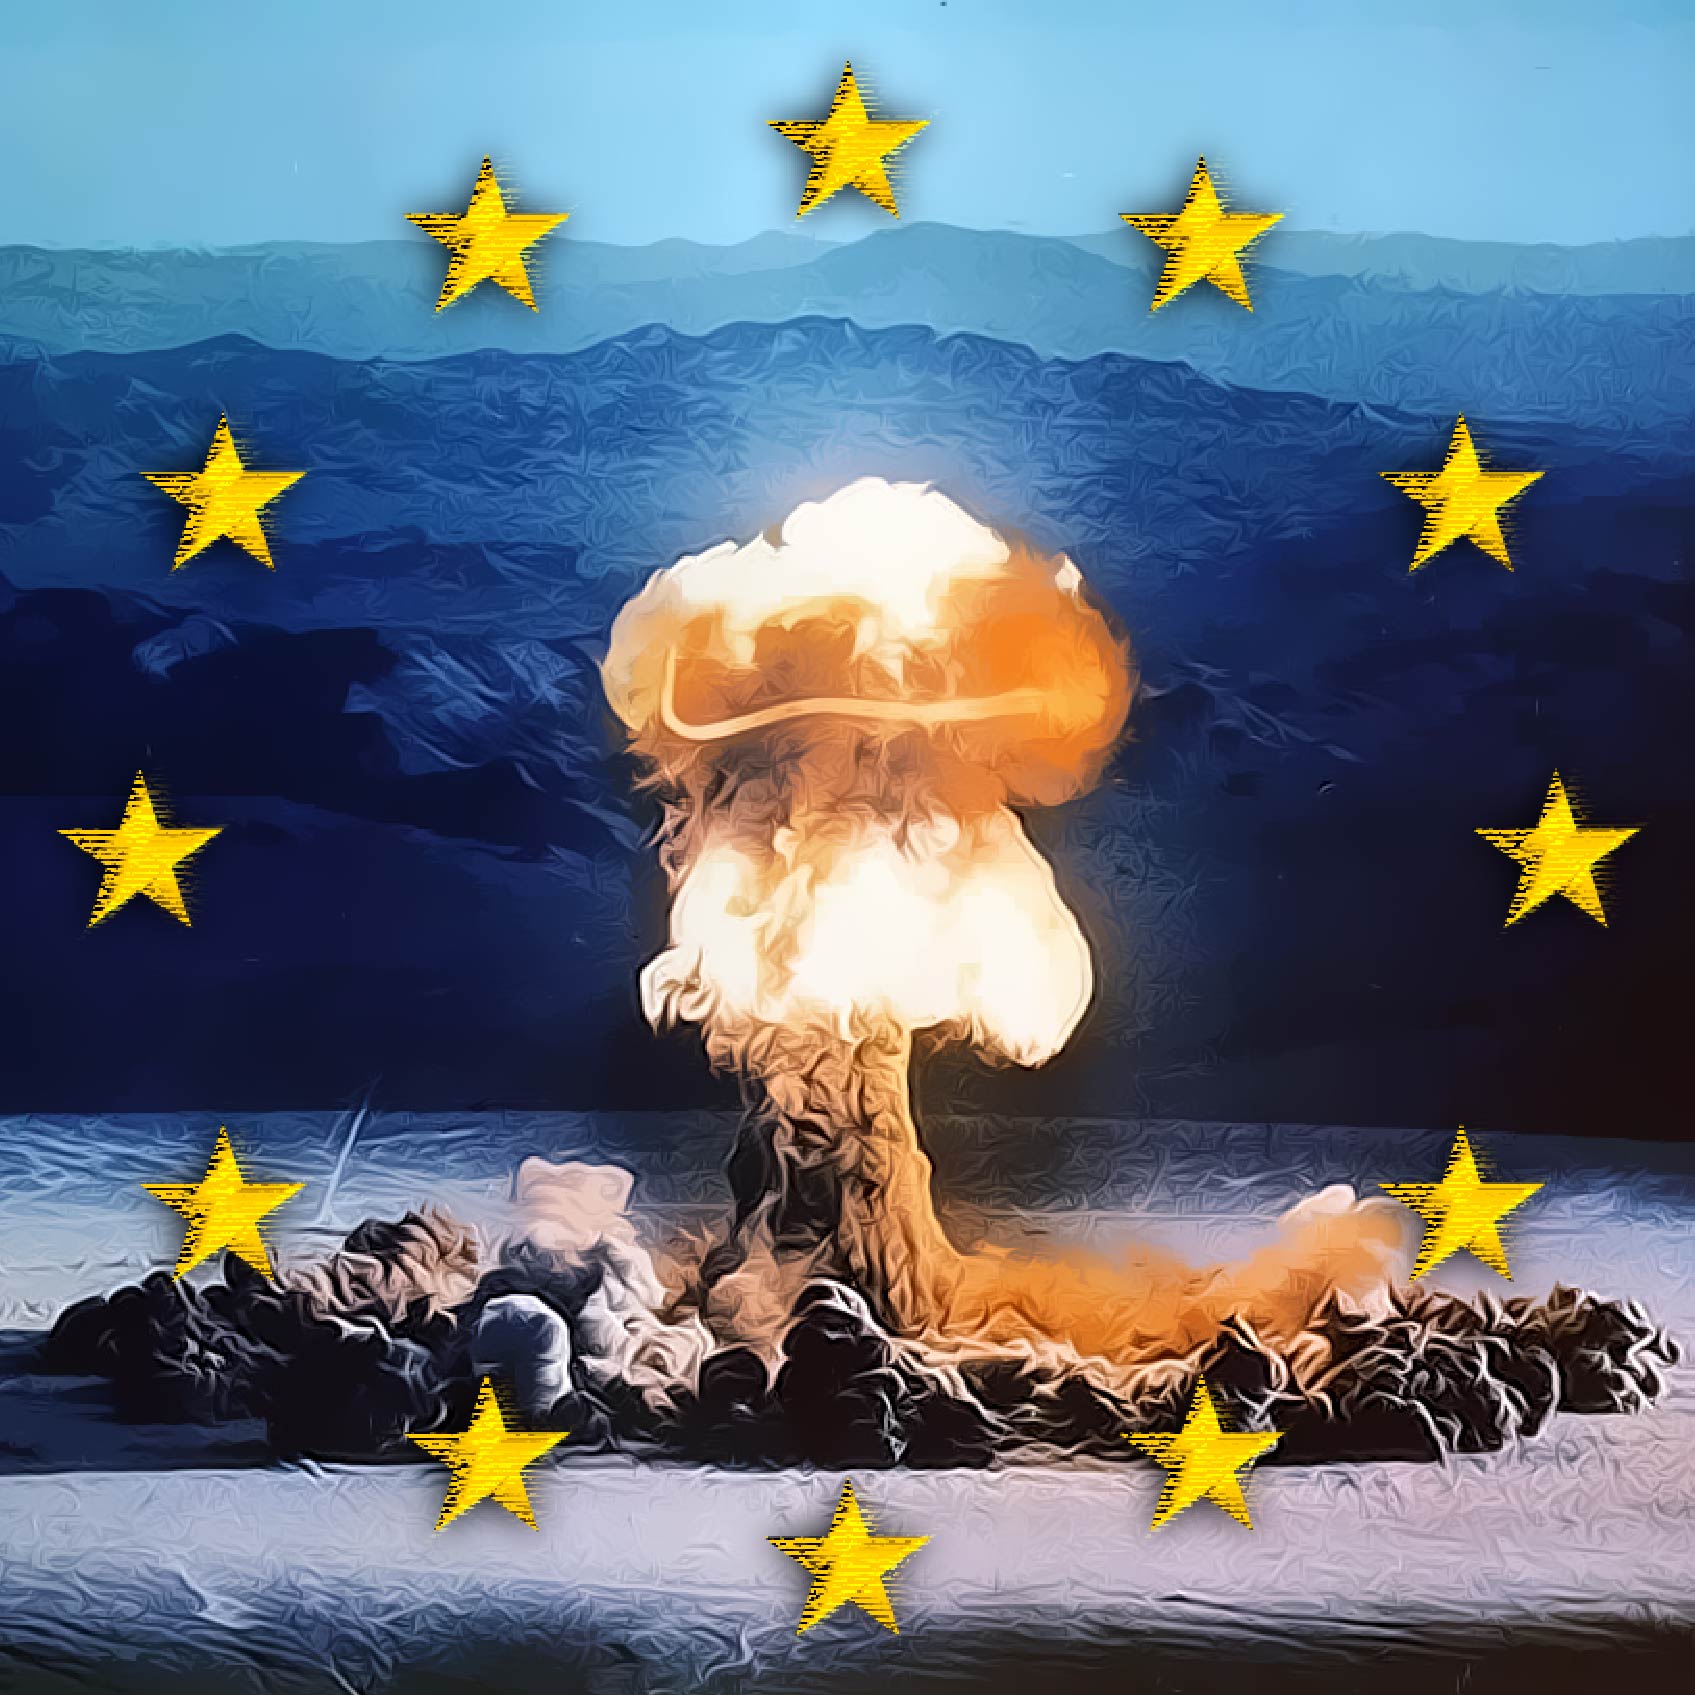 Jubiläums-Weltkrieg in Europa unausweichlich Europa EU gewollt Krieg 2014 Ukraine die Inszenierung provoziert Friedensstifer-Jubilaeumskrieg